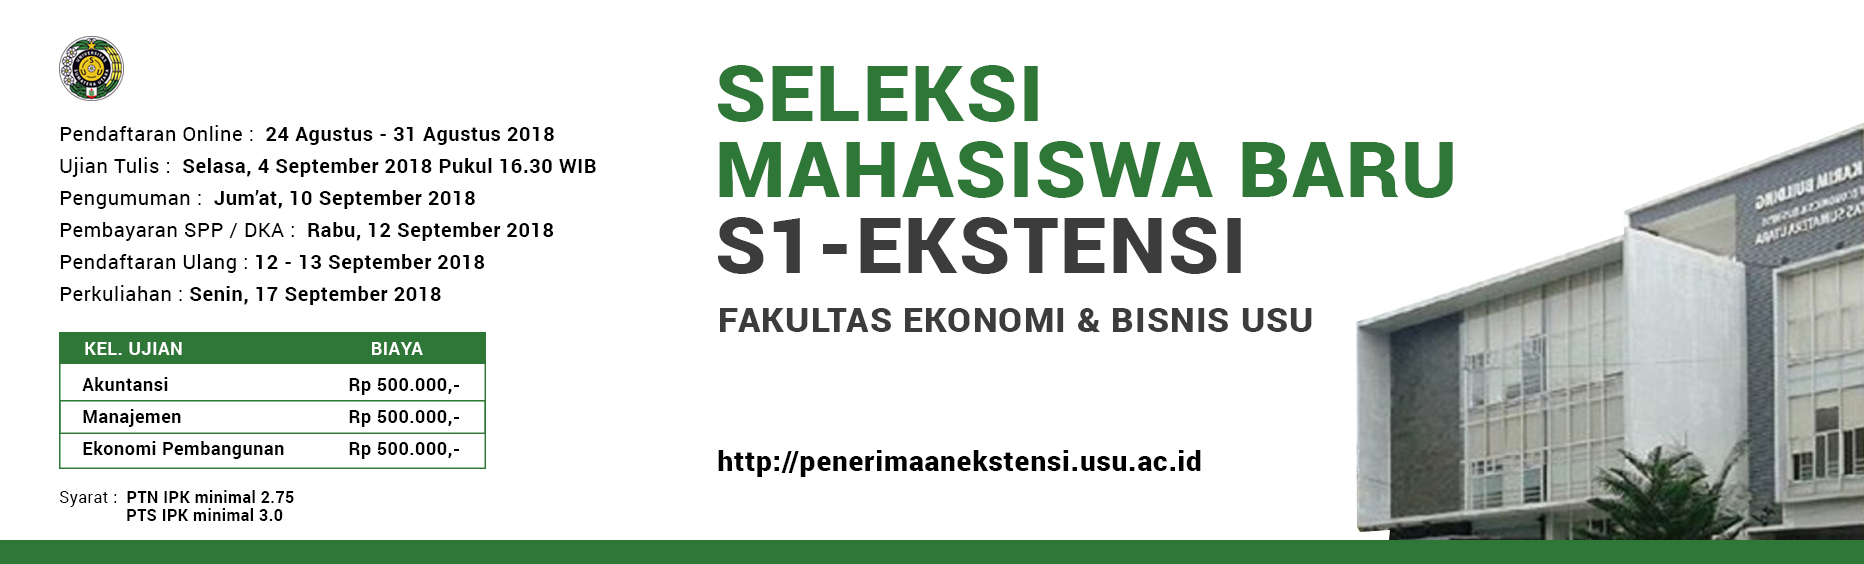 PENERIMAAN MAHASISWA BARU PROGRAM S1 - EKSTENSI